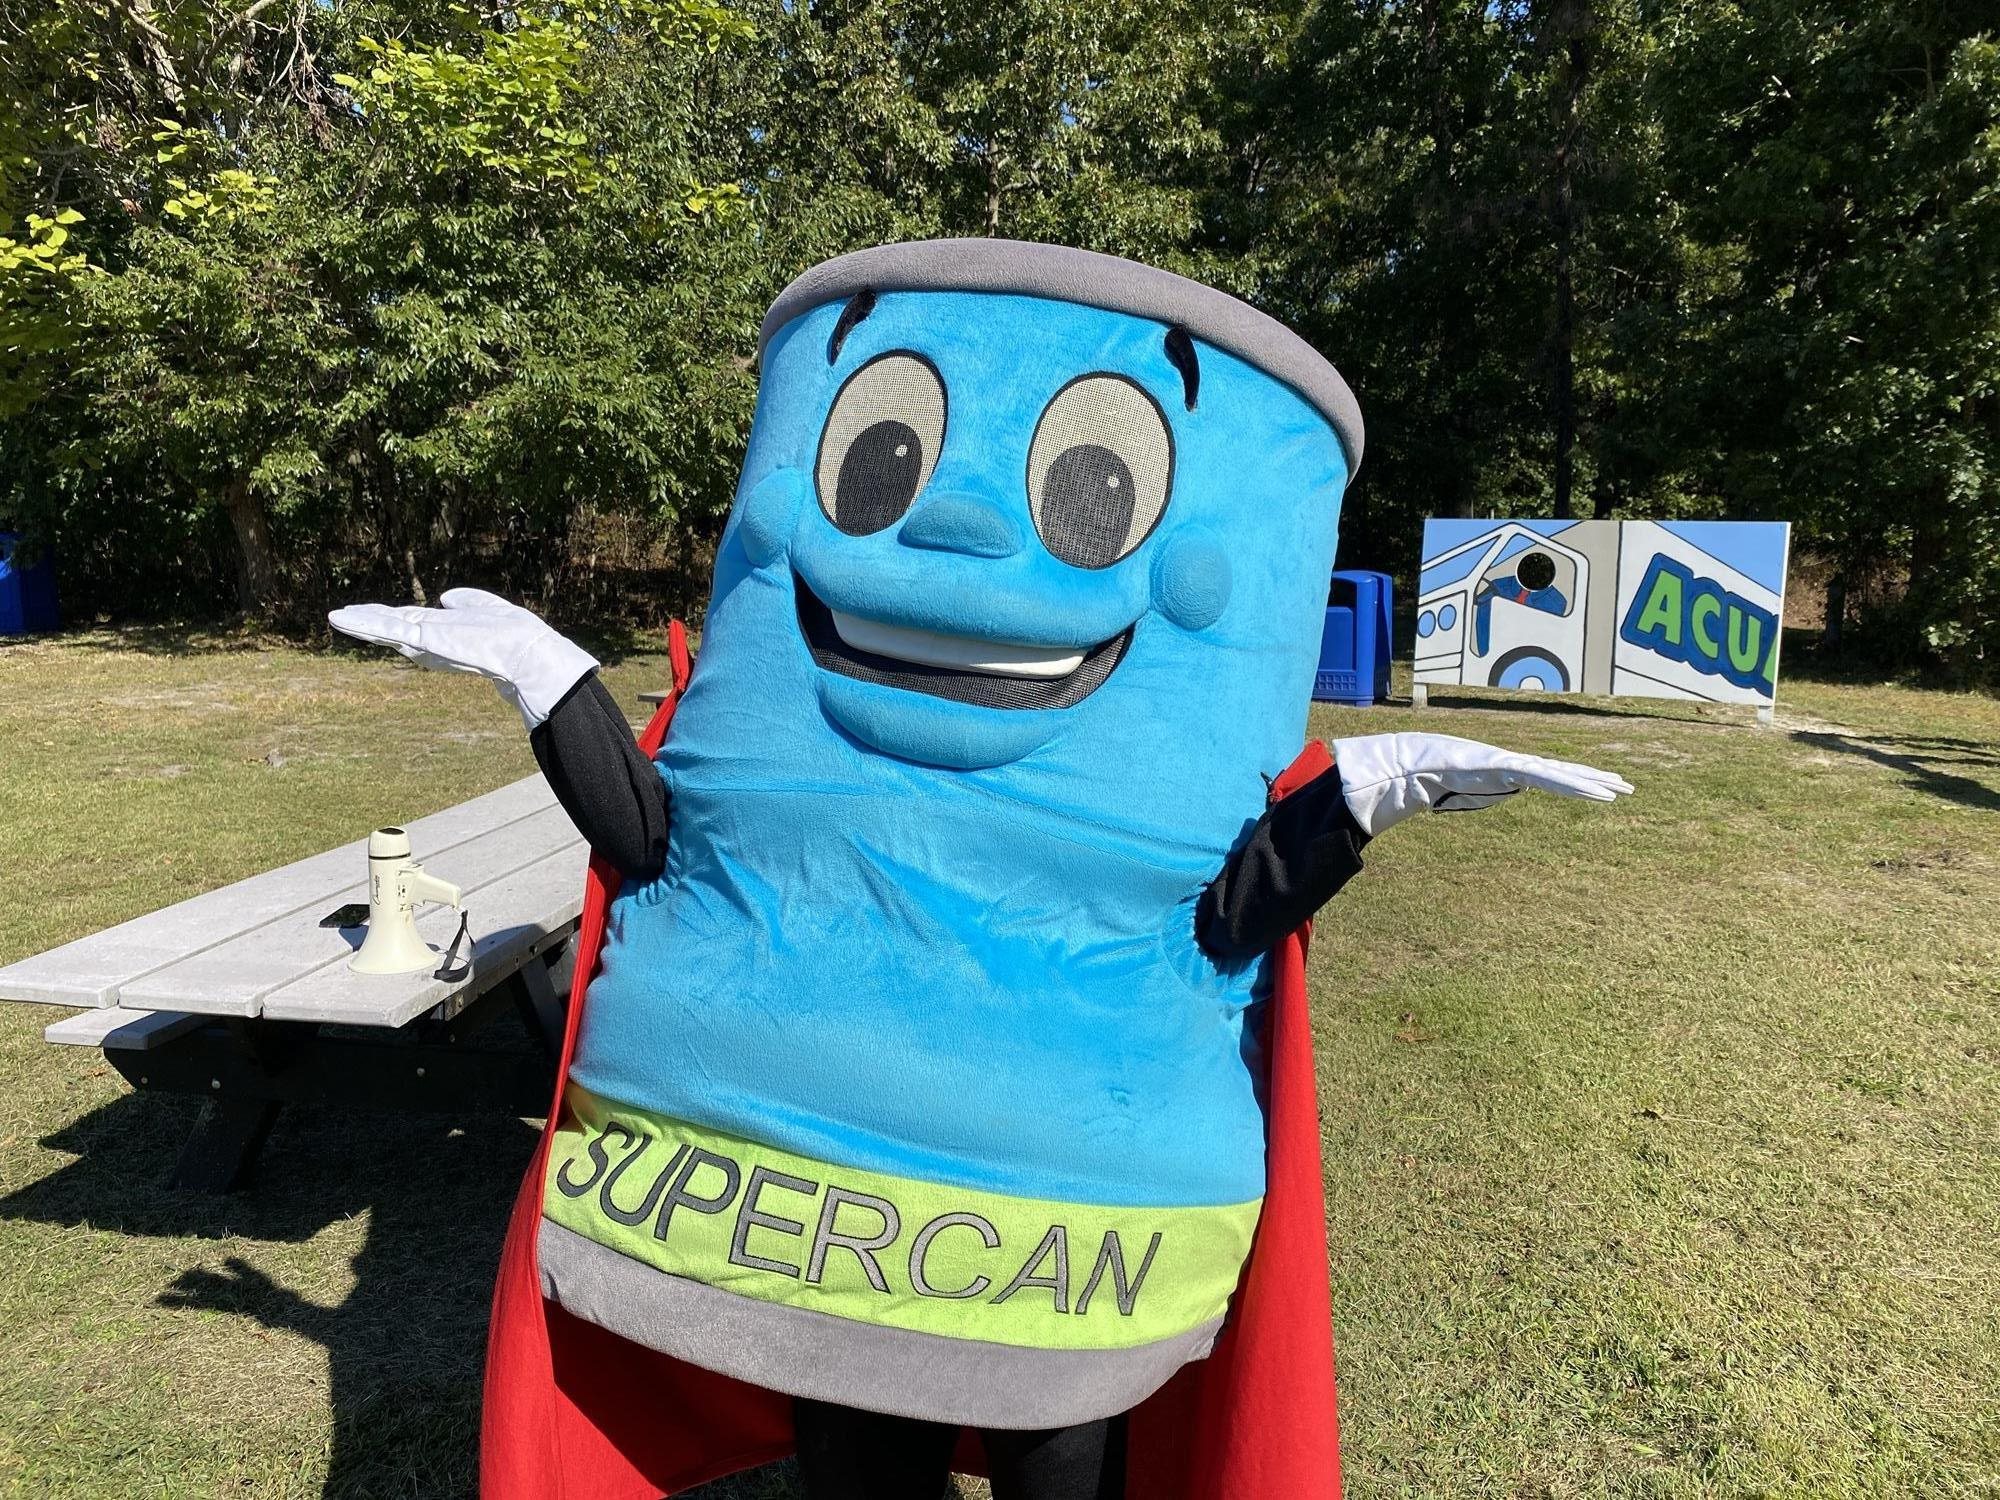 Meet Supercan!